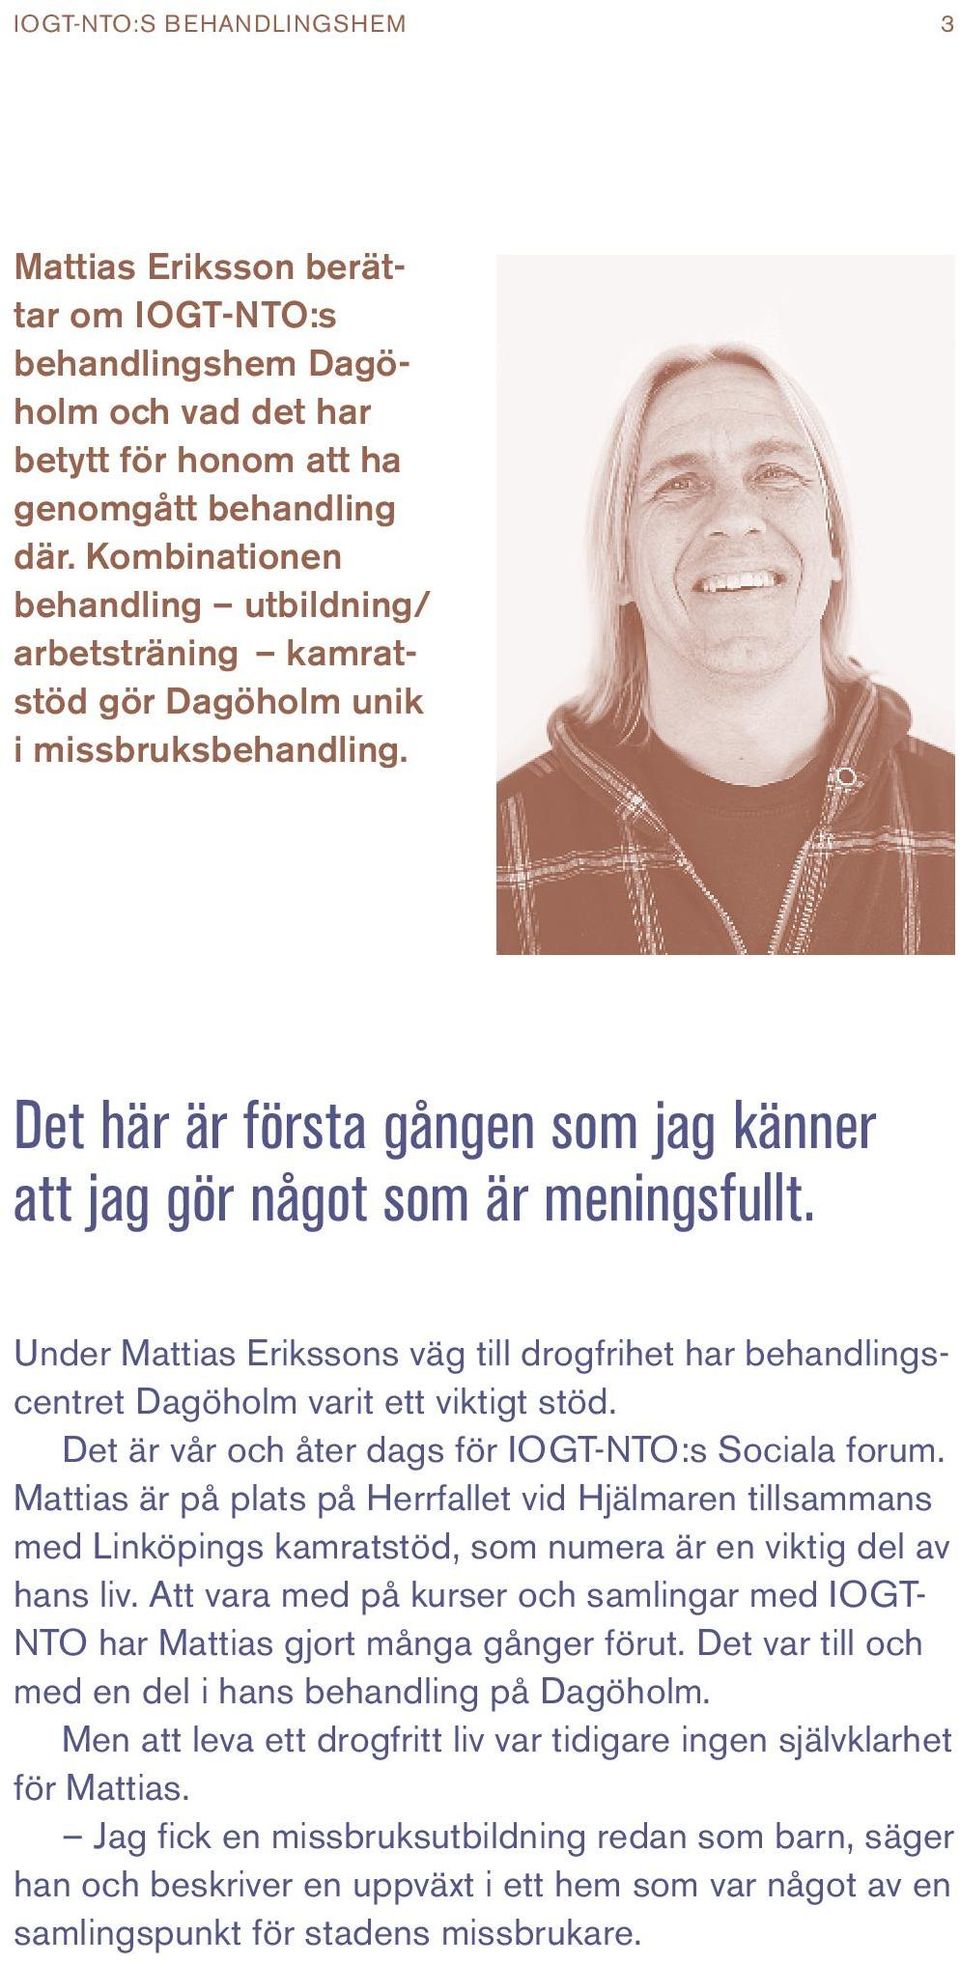 Under Mattias Erikssons väg till drogfrihet har behandlingscentret Dagöholm varit ett viktigt stöd. Det är vår och åter dags för IOGT-NTO:s Sociala forum.